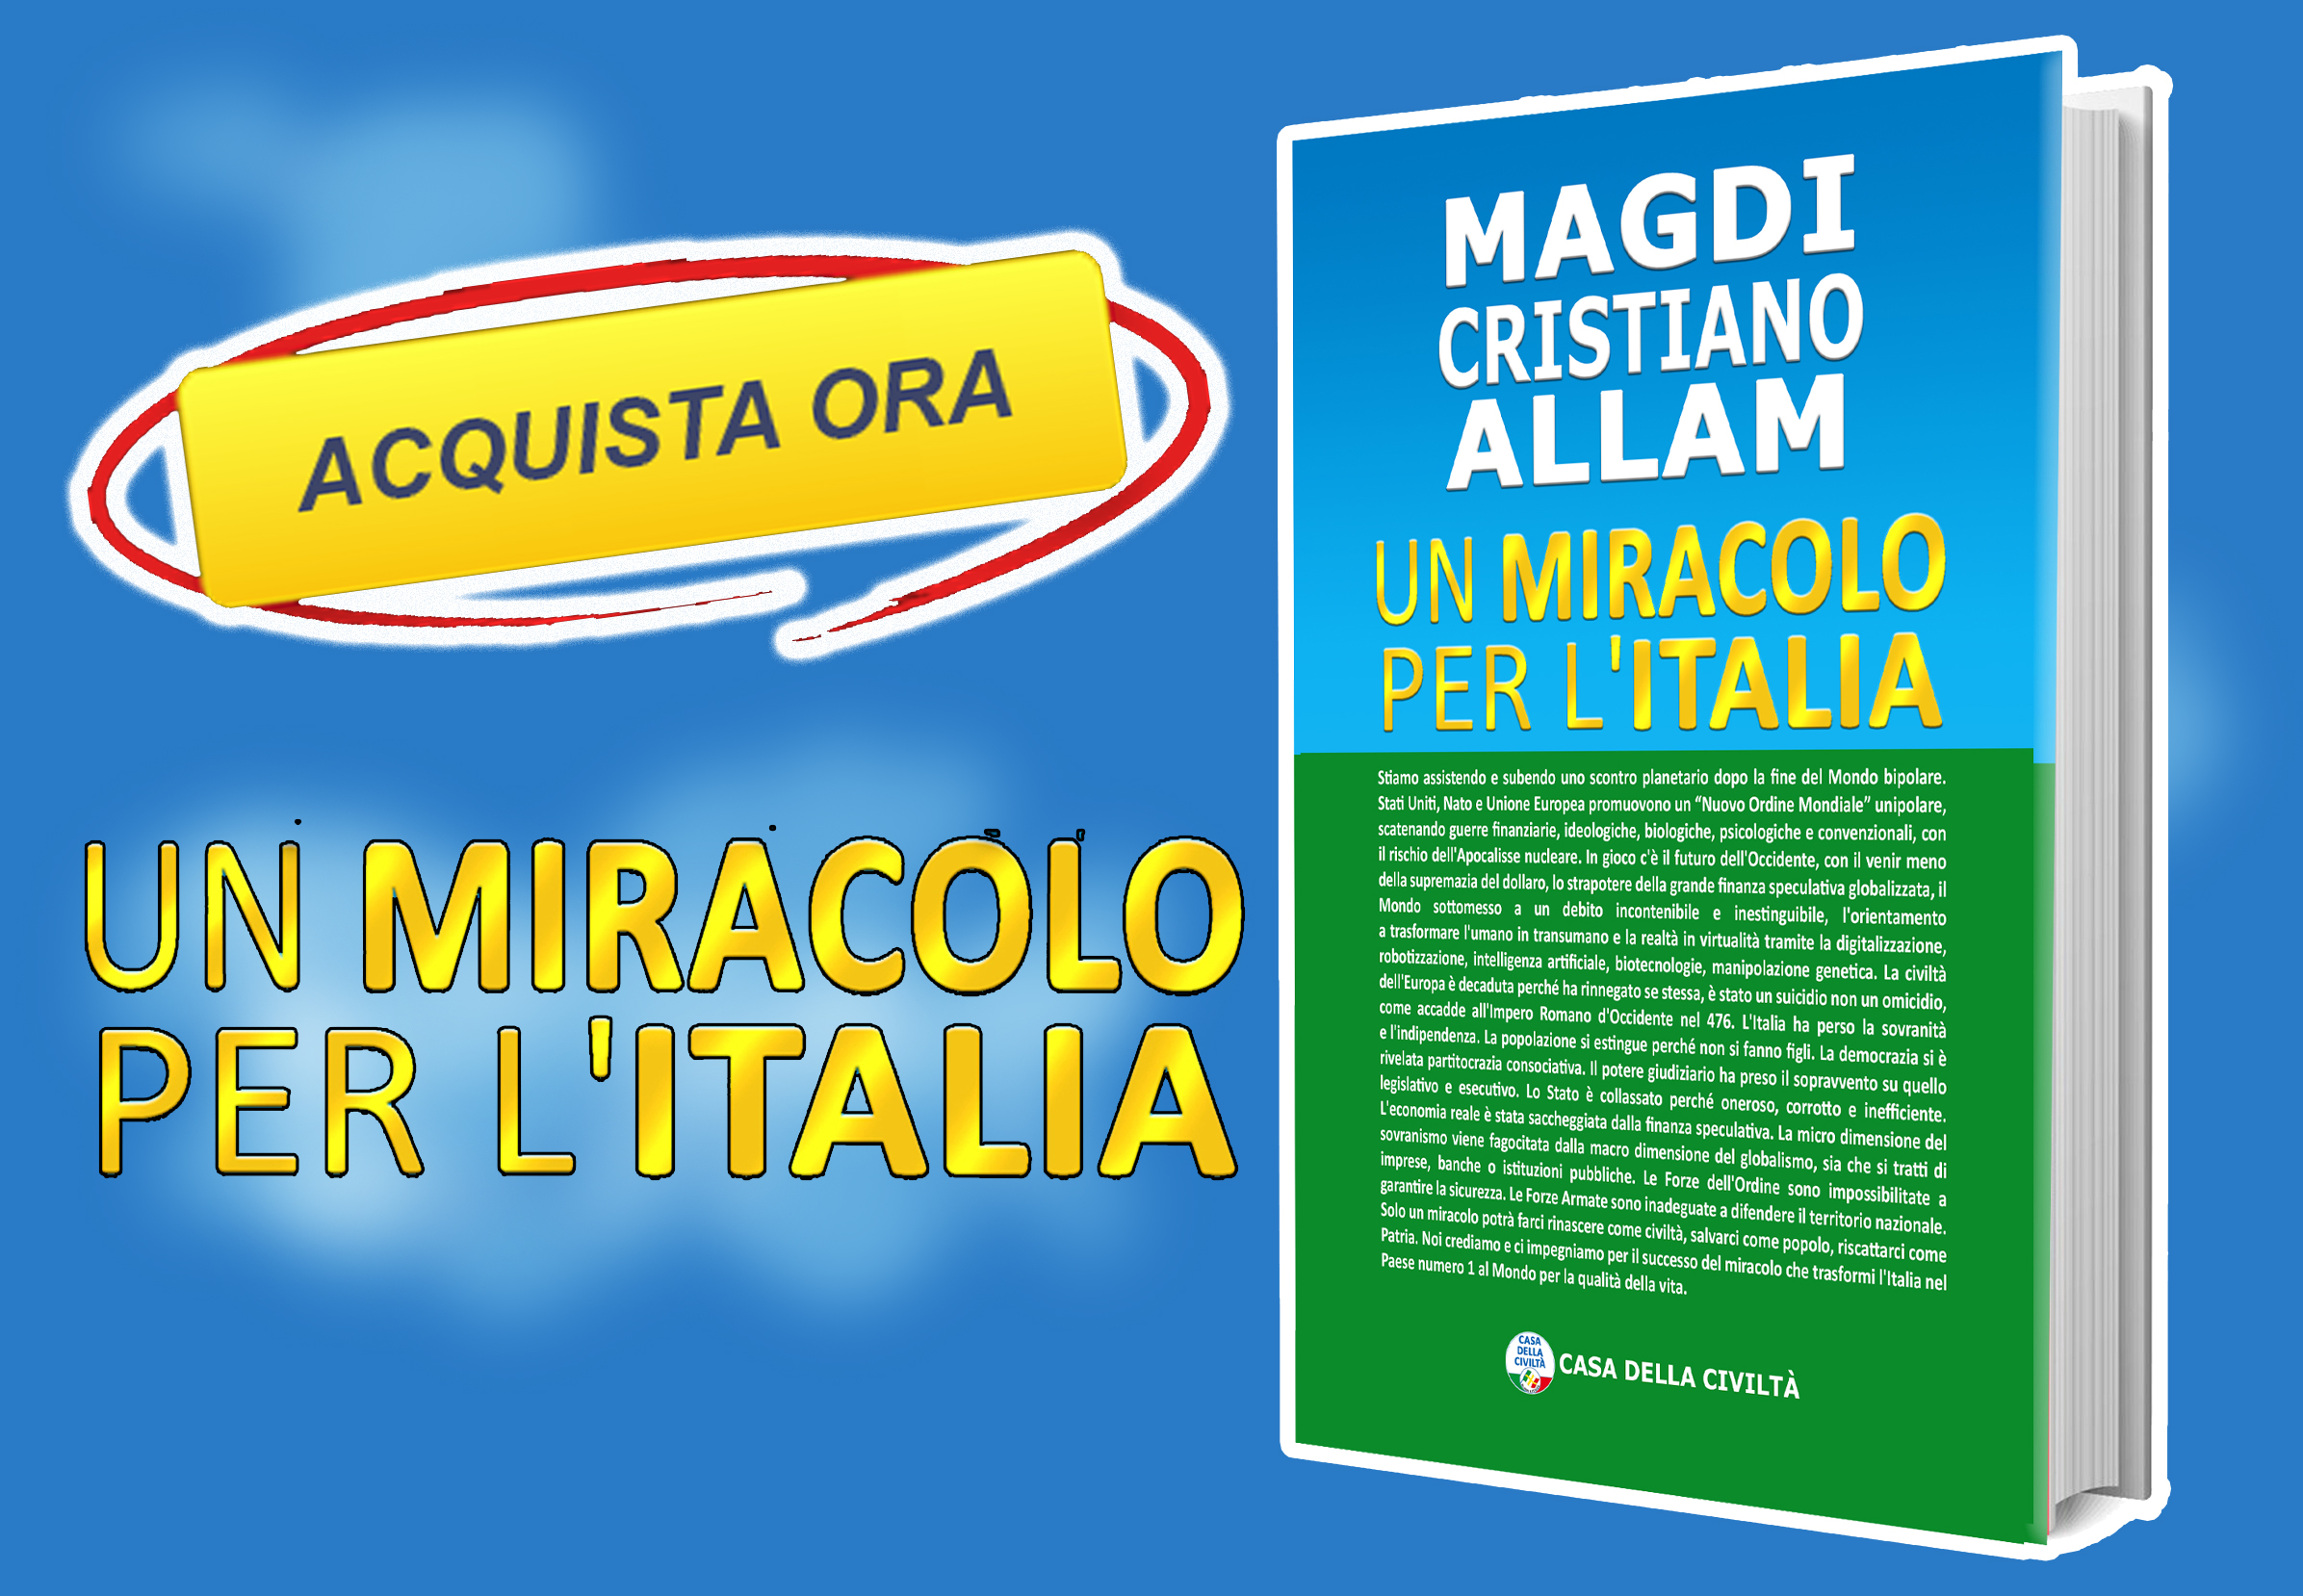 Come acquistare “UN MIRACOLO PER L’ITALIA“, il nuovo libro di MAGDI CRISTIANO ALLAM